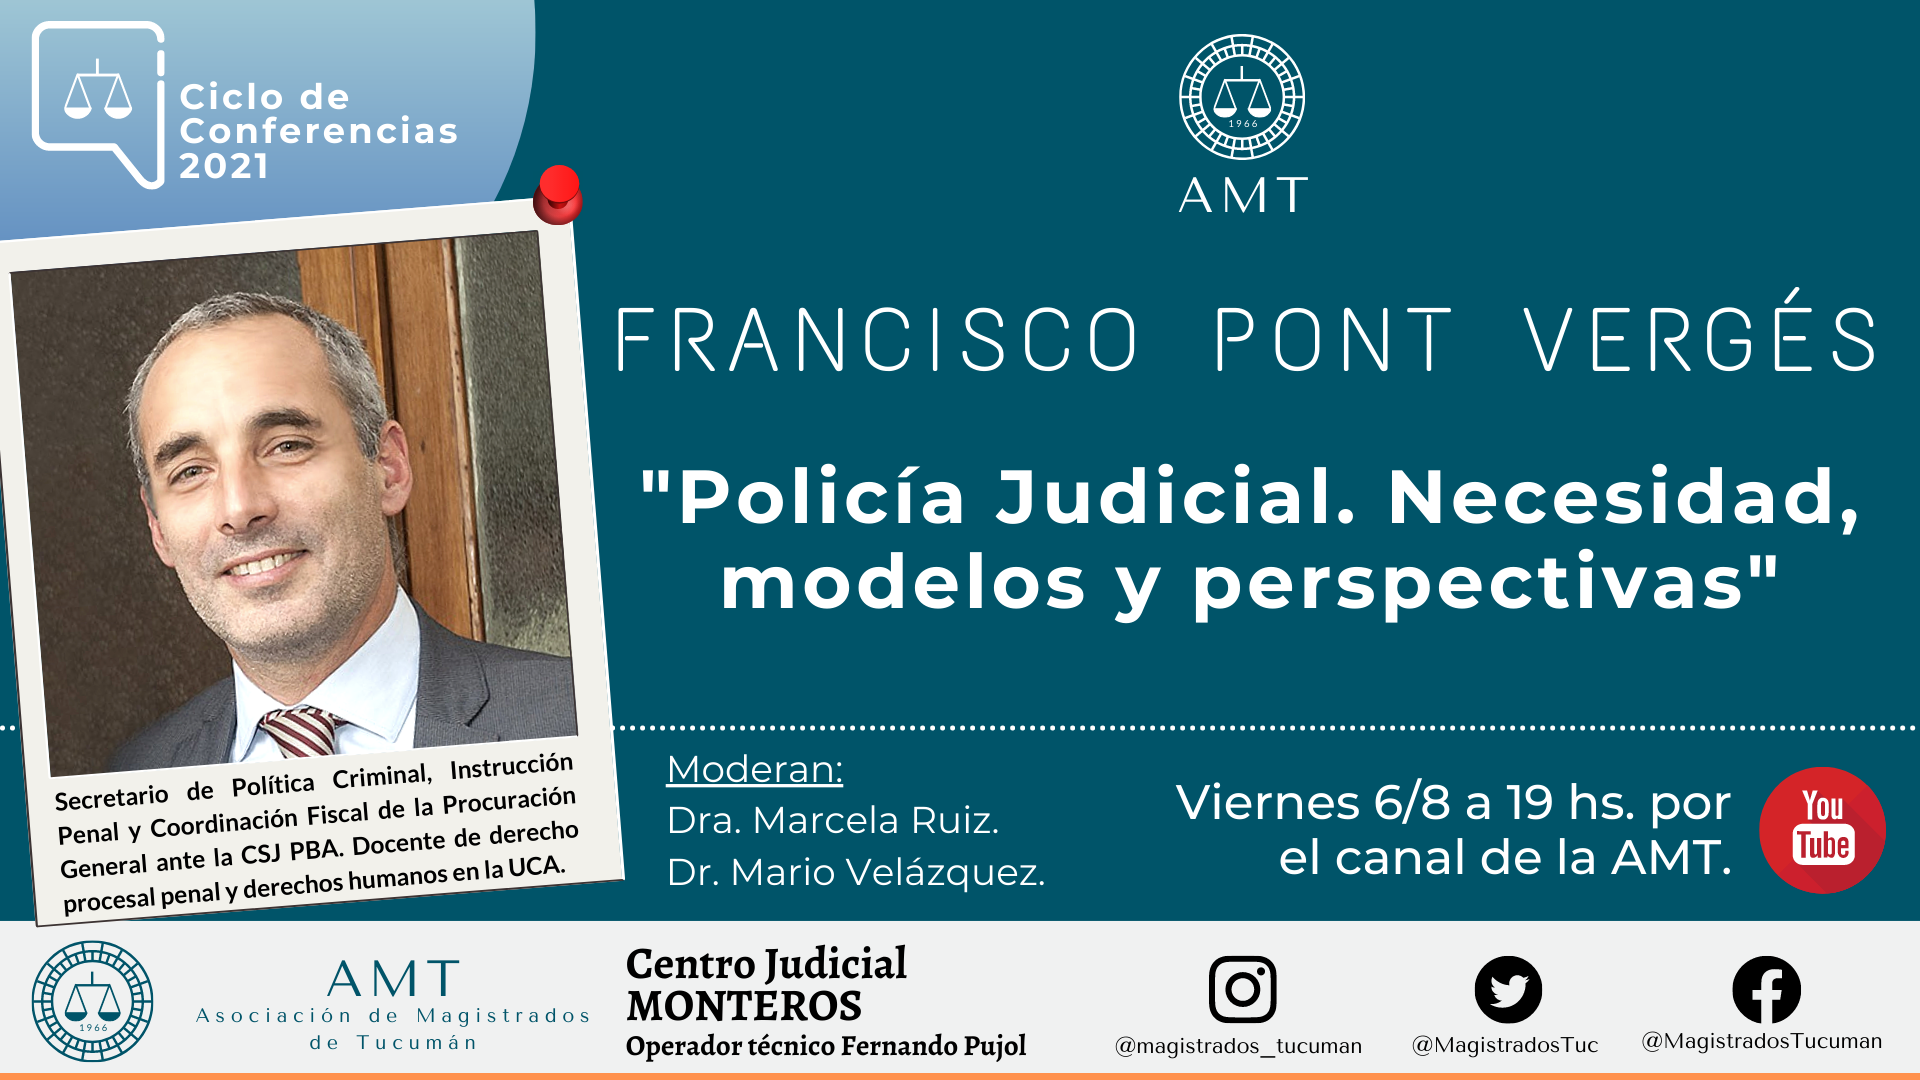 Vuelva a ver la conferencia de Francisco Pont Vergés «Policía Judicial. Necesidad, modelos y perspectivas»